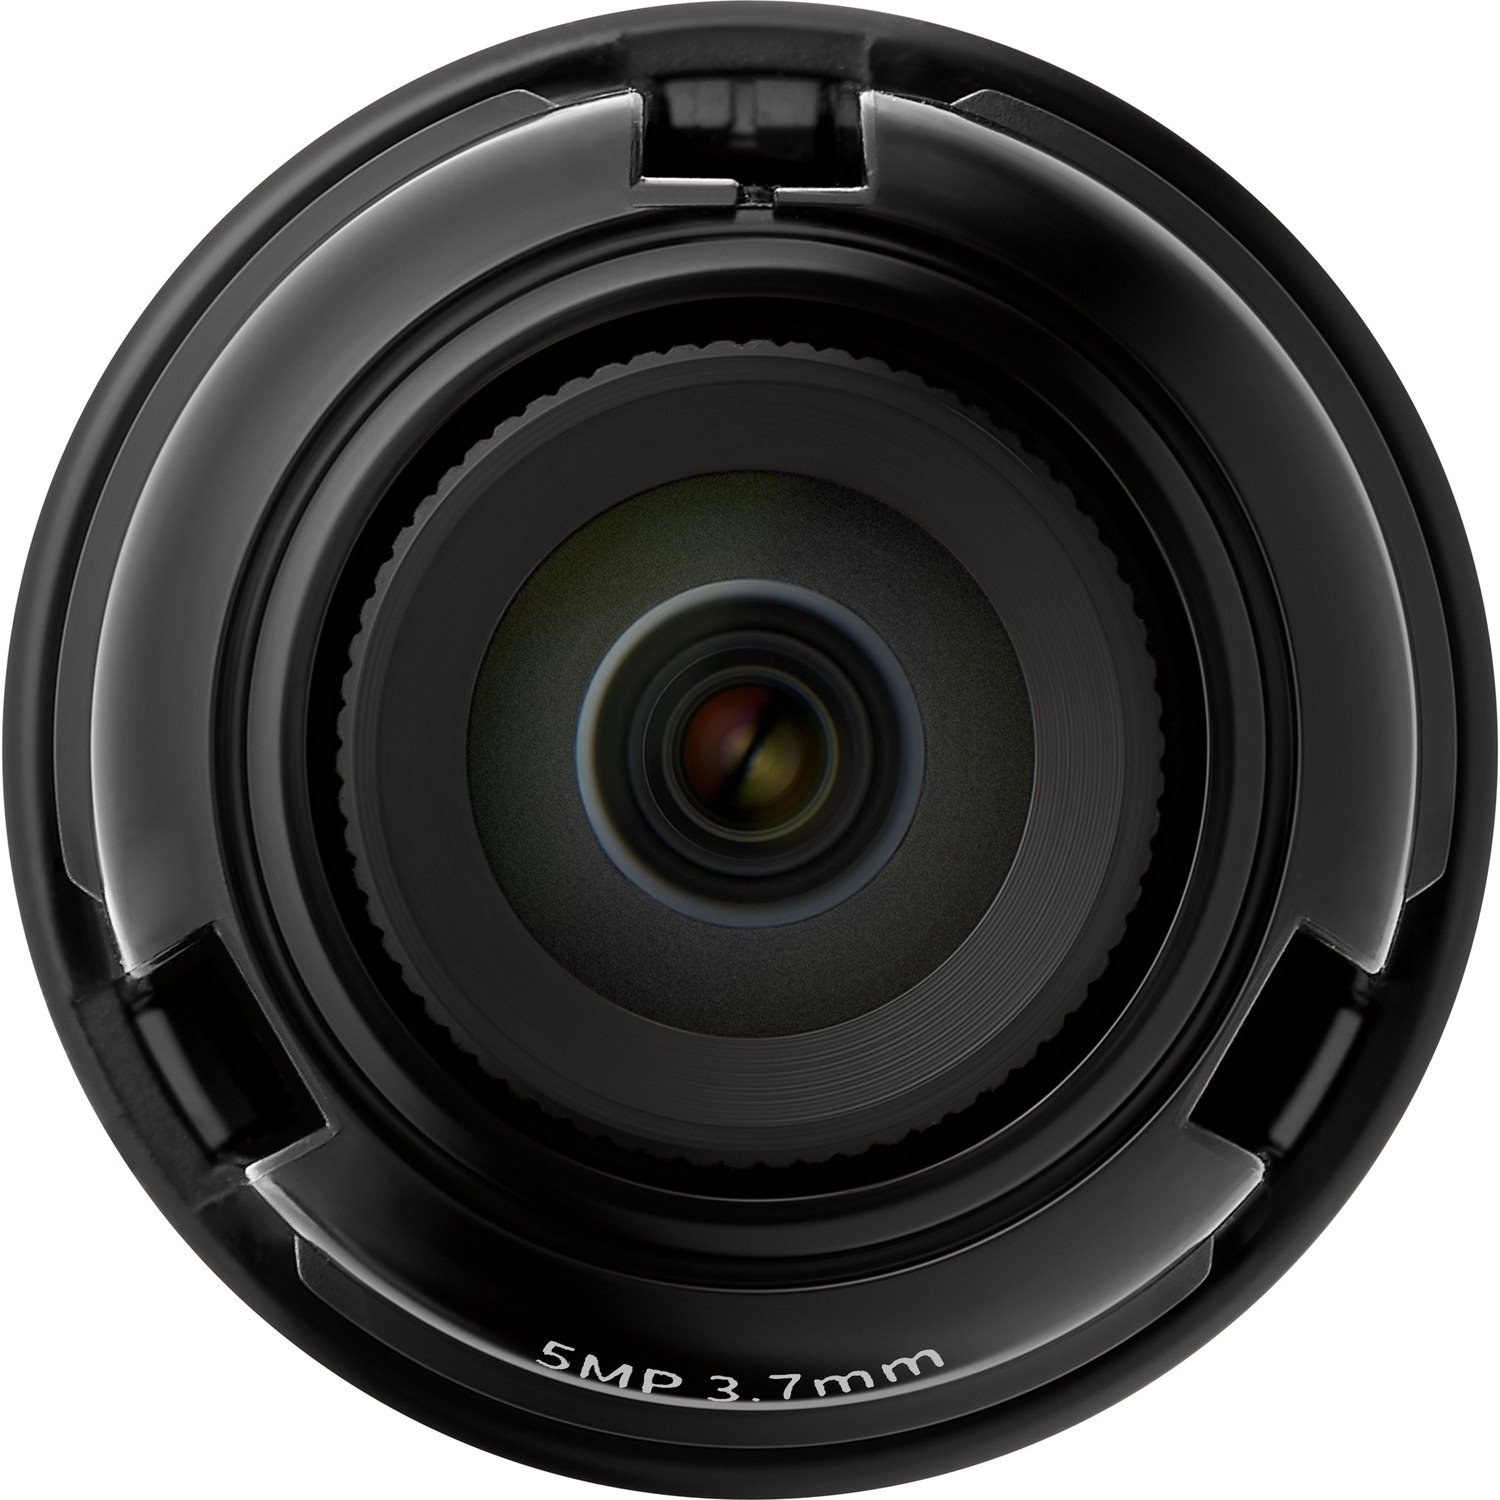 Wisenet SLA-5M3700P - 3.70 mm - f/1.6 - Fixed Lens for M12-mount